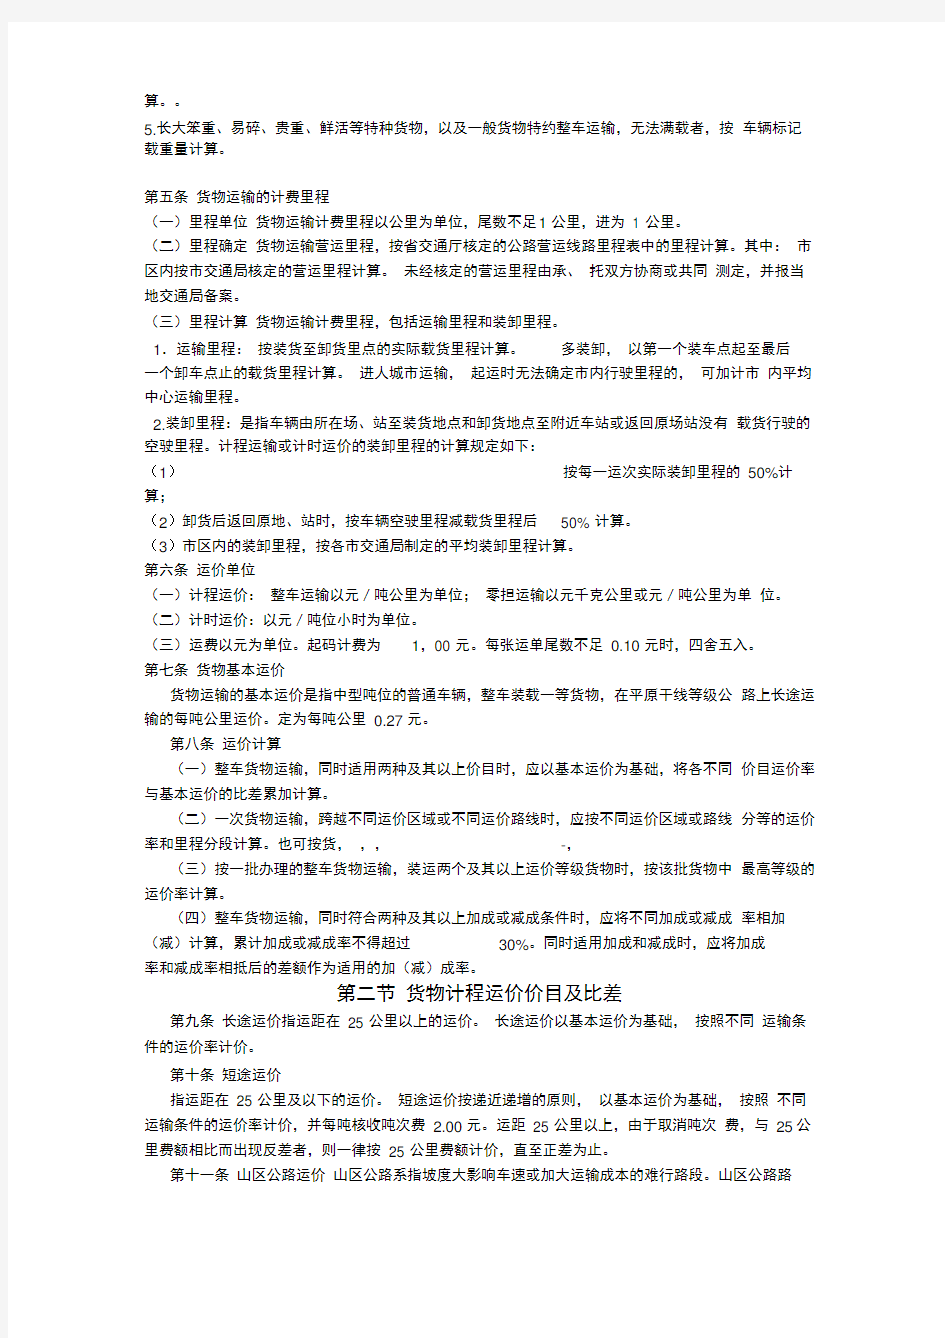 河北省汽车货物运价规则-Microsoft-Word-文档